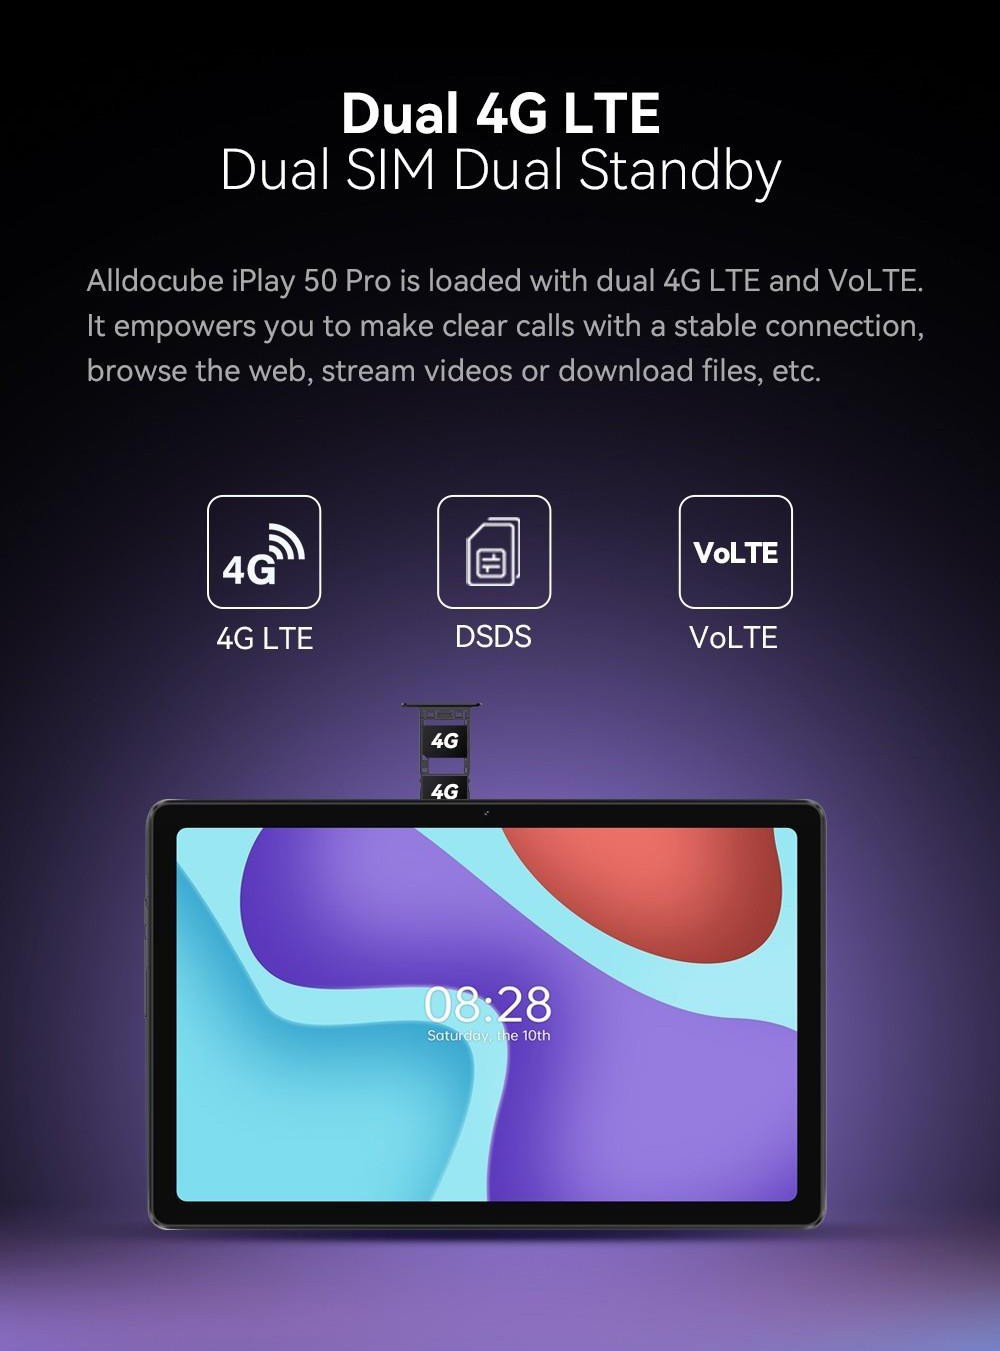 tablette ALLDOCUBE iPlay 50 Pro 10.4